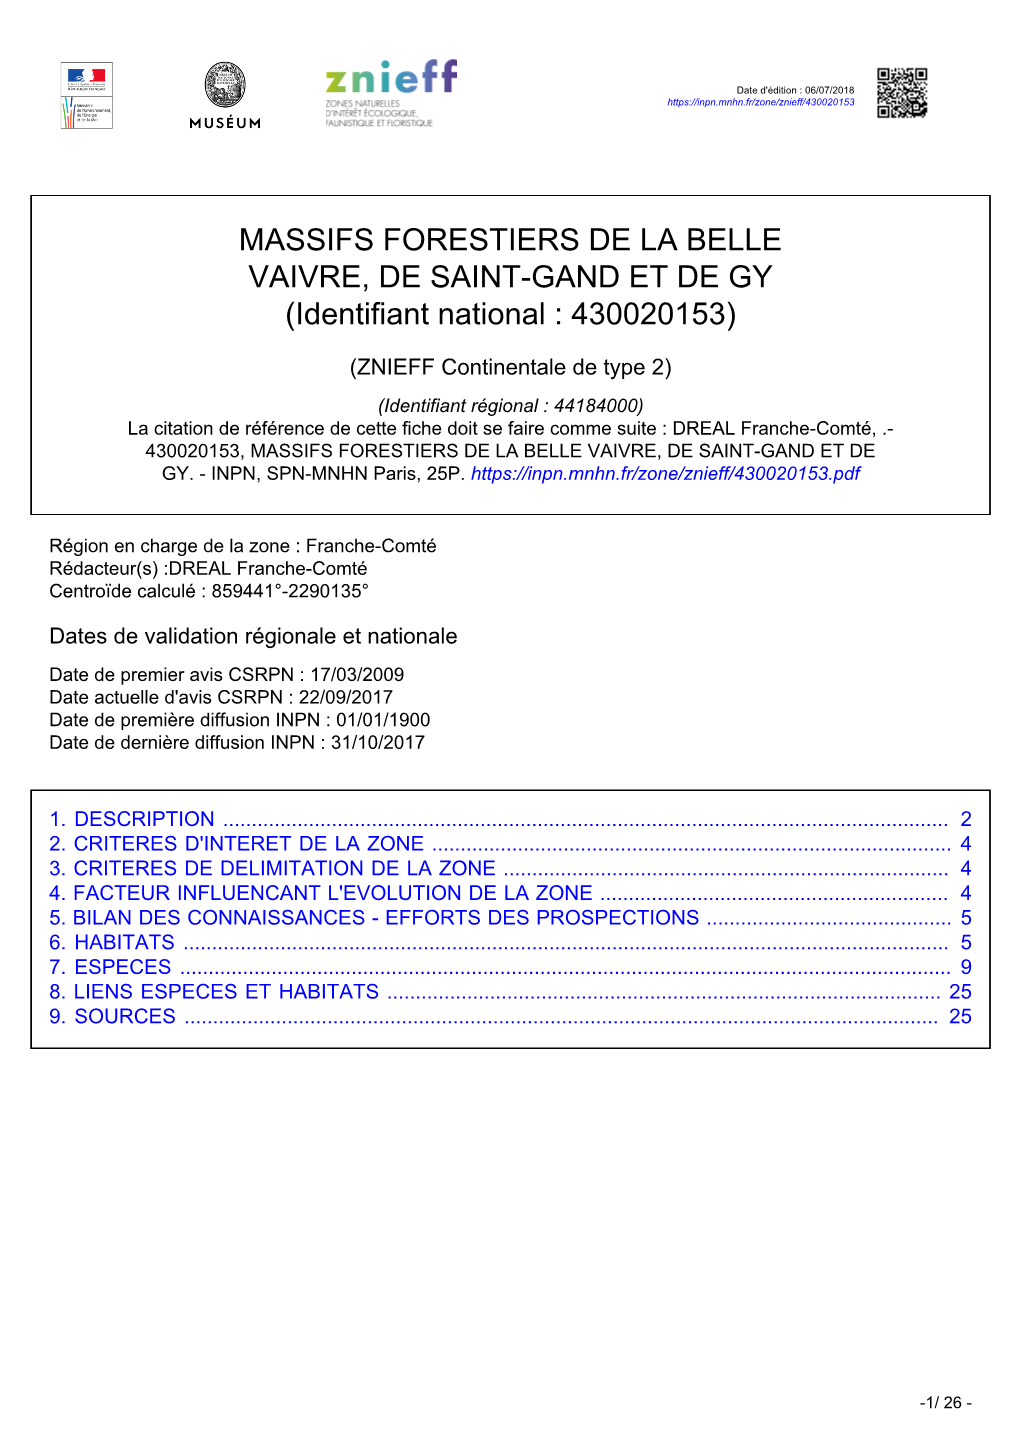 MASSIFS FORESTIERS DE LA BELLE VAIVRE, DE SAINT-GAND ET DE GY (Identifiant National : 430020153)